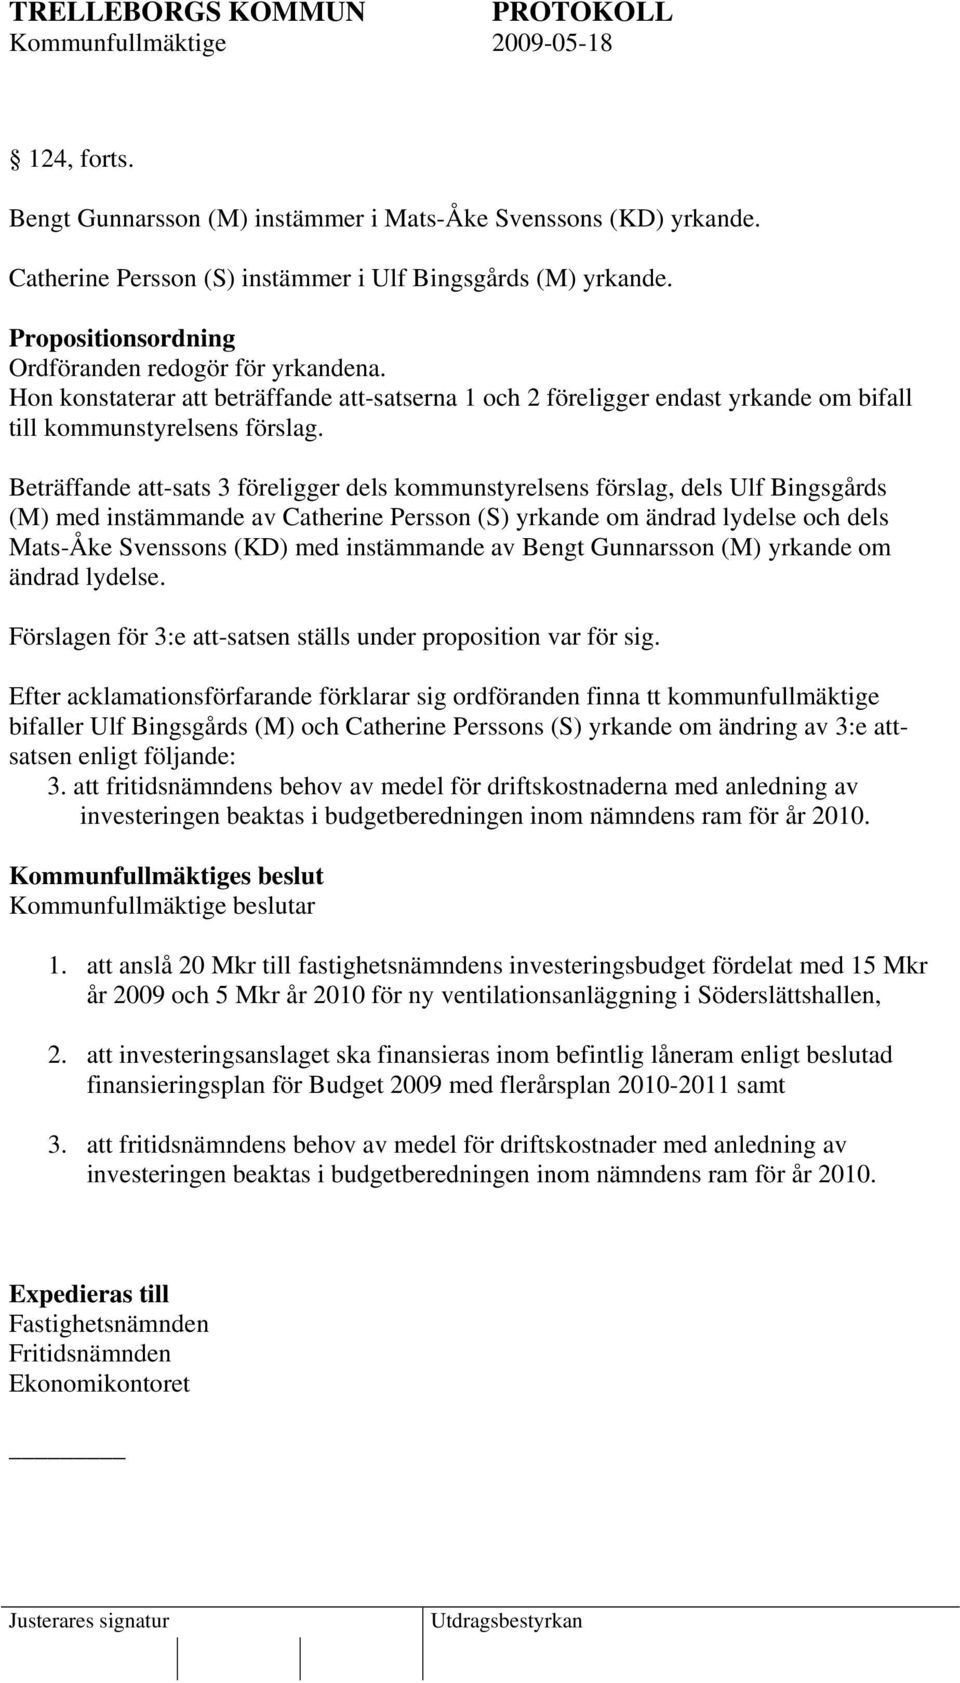 Beträffande att-sats 3 föreligger dels kommunstyrelsens förslag, dels Ulf Bingsgårds (M) med instämmande av Catherine Persson (S) yrkande om ändrad lydelse och dels Mats-Åke Svenssons (KD) med